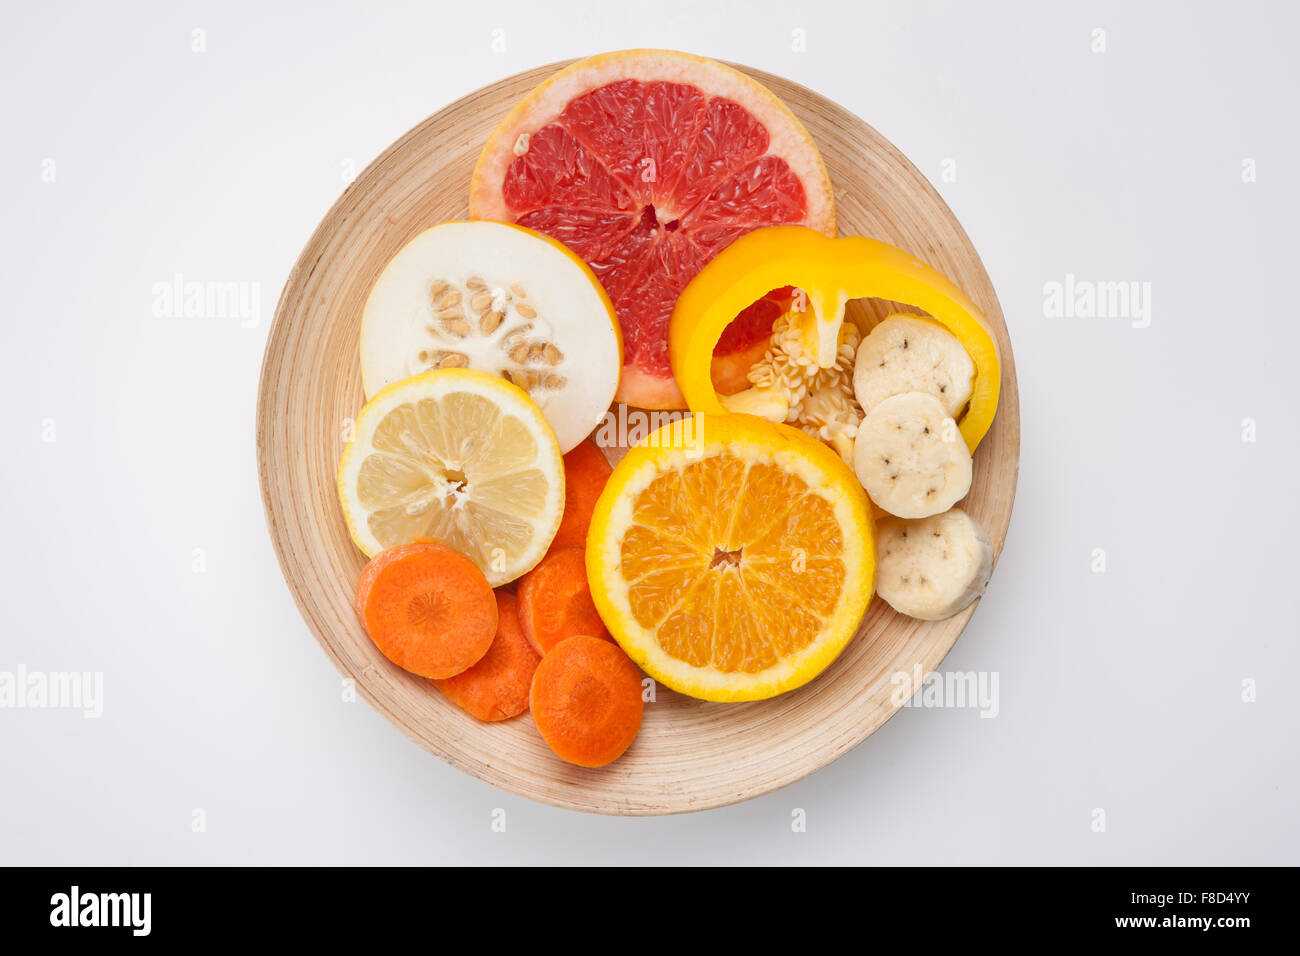 High angle de tranches de couleur jaune et orange des fruits et légumes frais tels que le pamplemousse, melon oriental, citron, orange, Banque D'Images